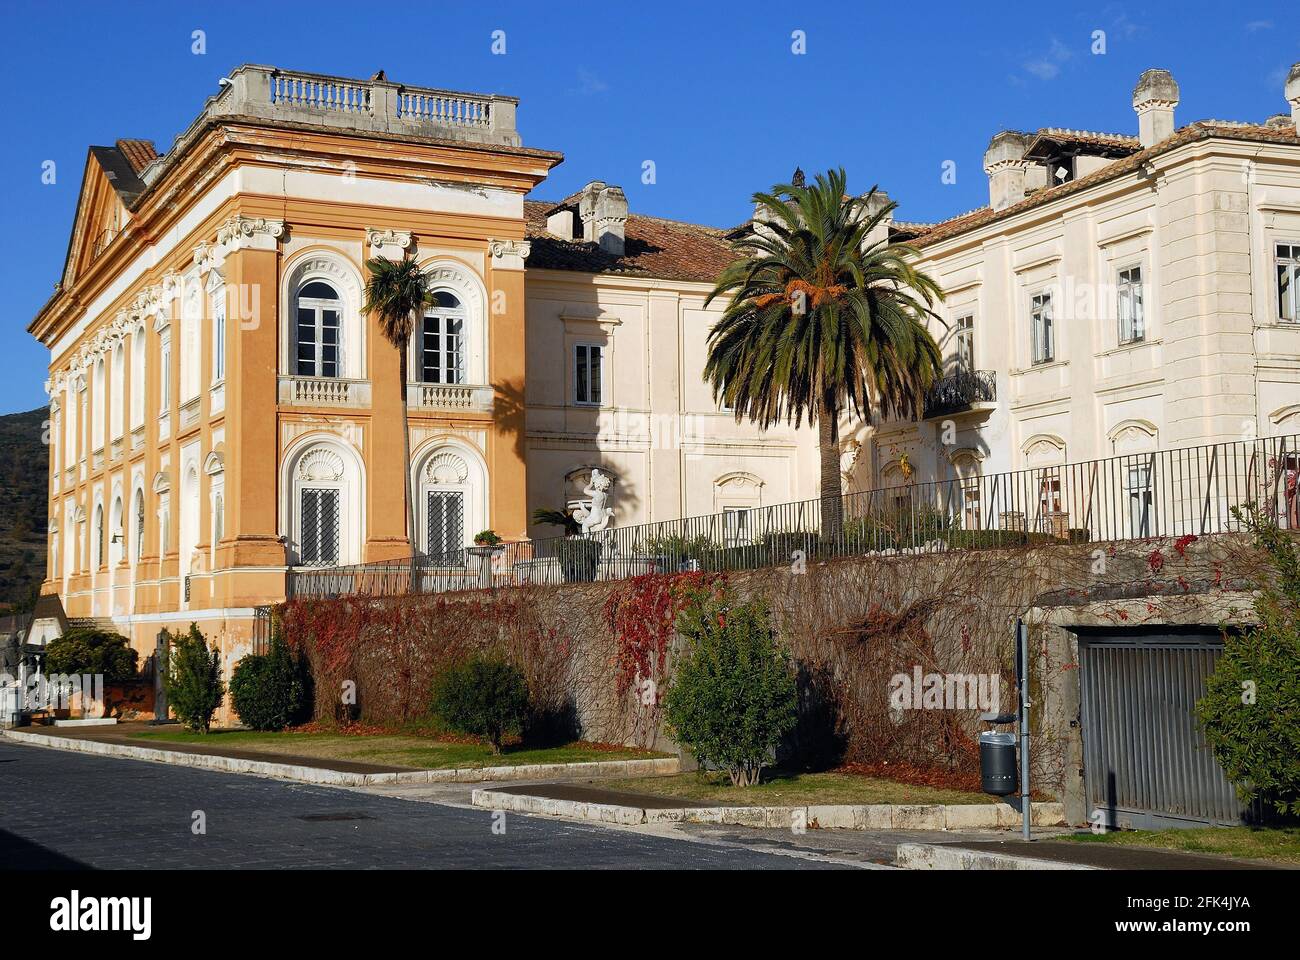 San Leucio, Caserta, Italia. È incluso nell'elenco dei siti patrimonio mondiale dell'UNESCO nel 1997. Il Palazzo Belvedere. Foto Stock